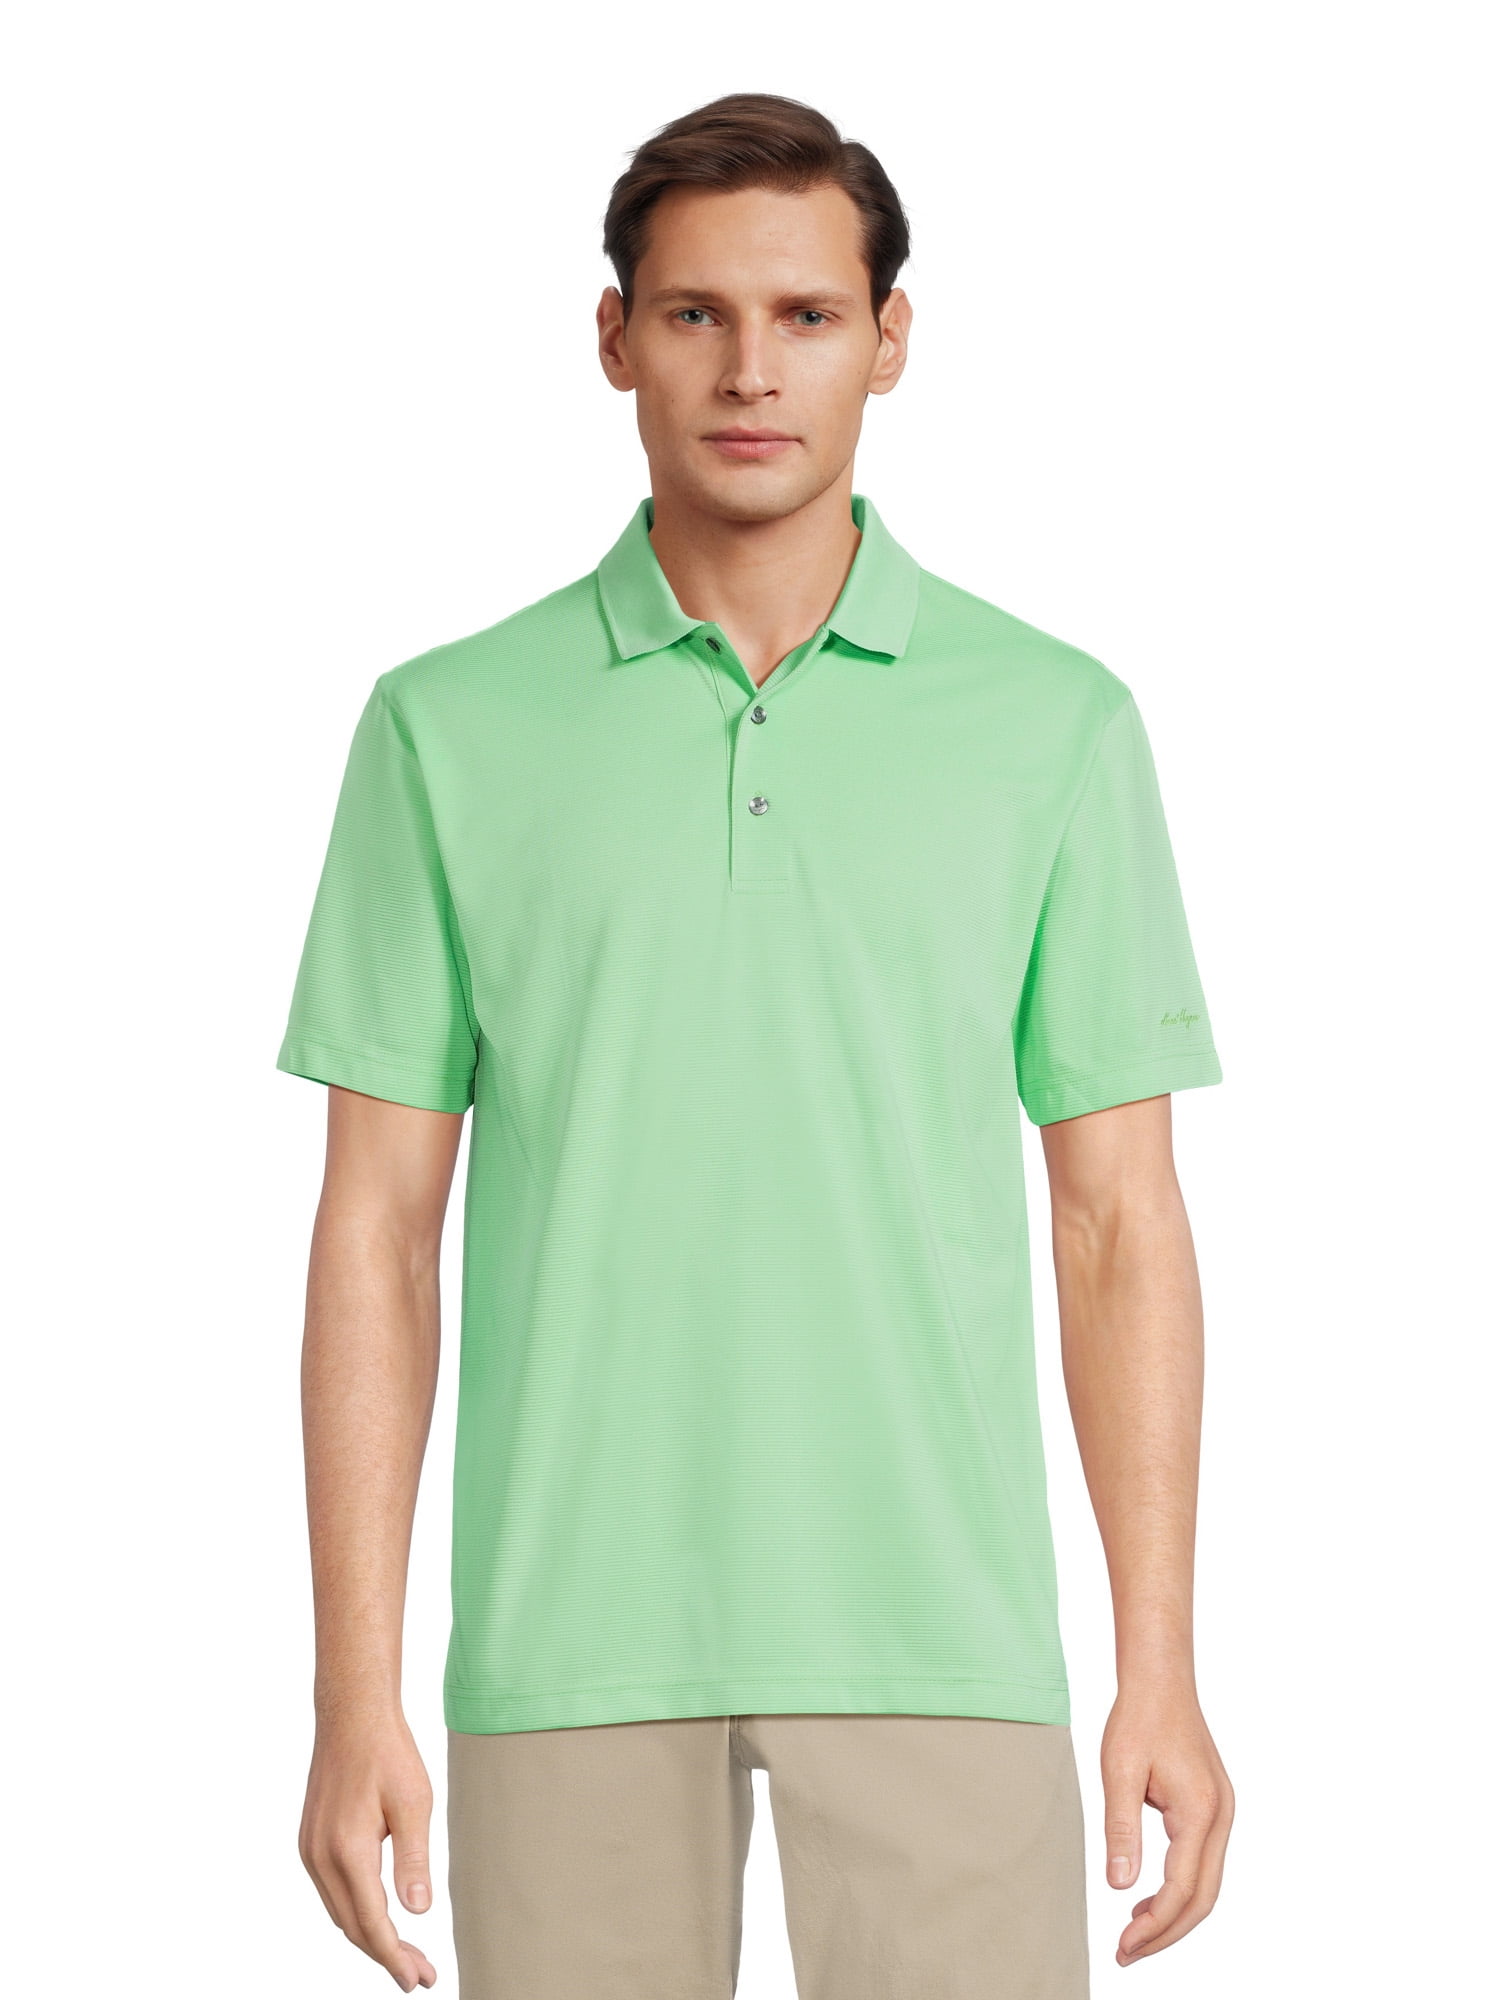 Ben Hogan Performance Men's Solid Ottoman Golf Polo Shirt - Walmart.com